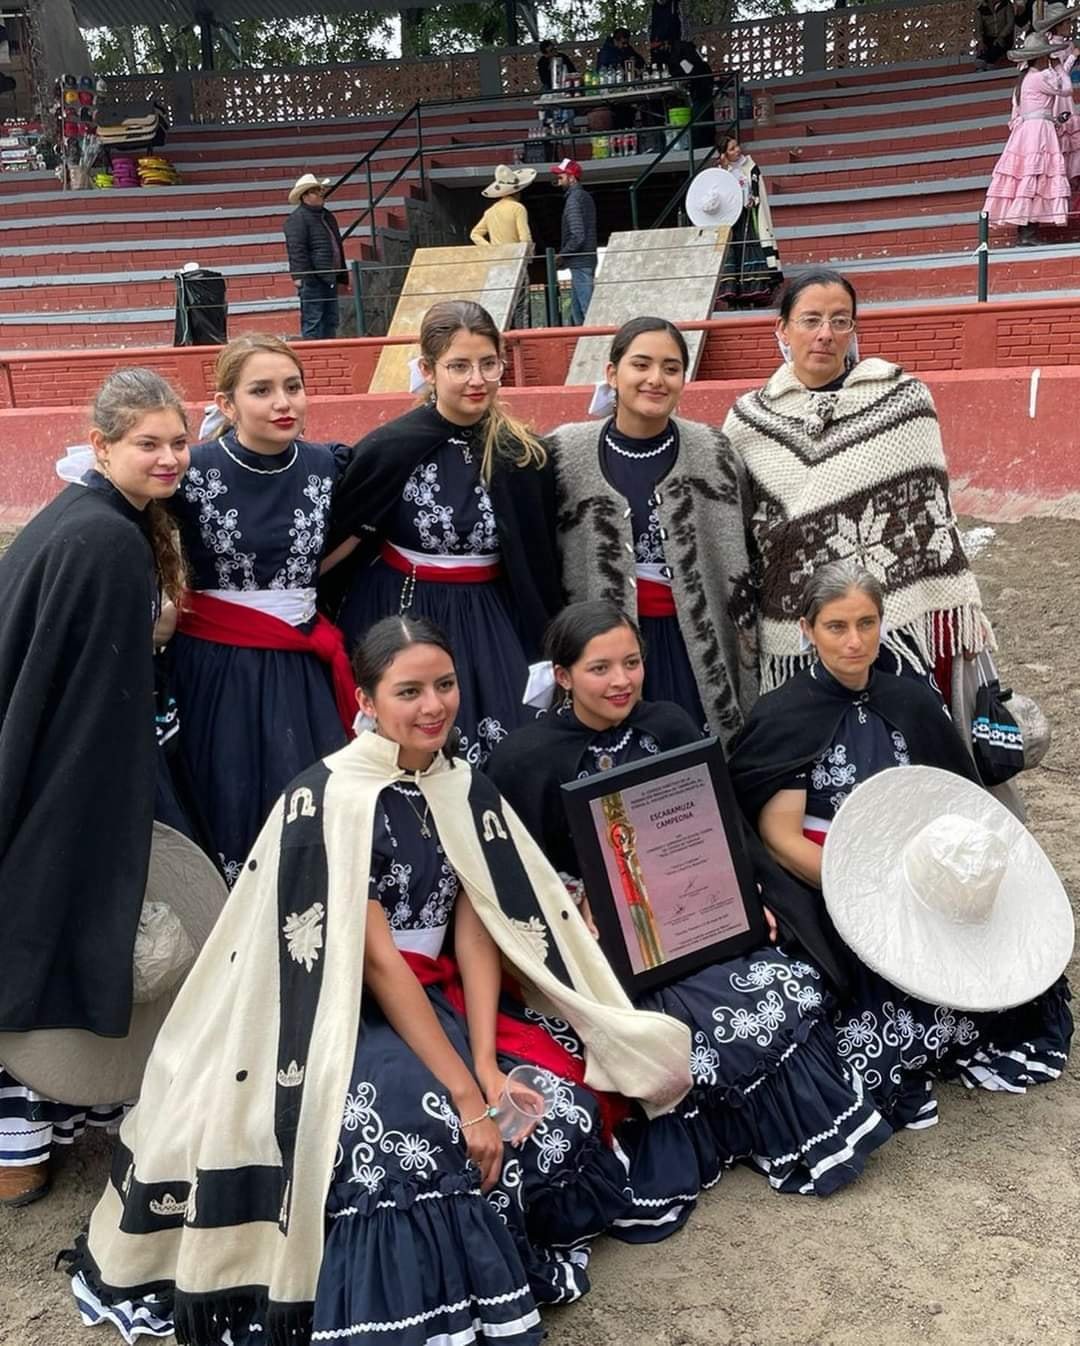 Cihuapitl, Campeona Estatal Tlaxcala 2021